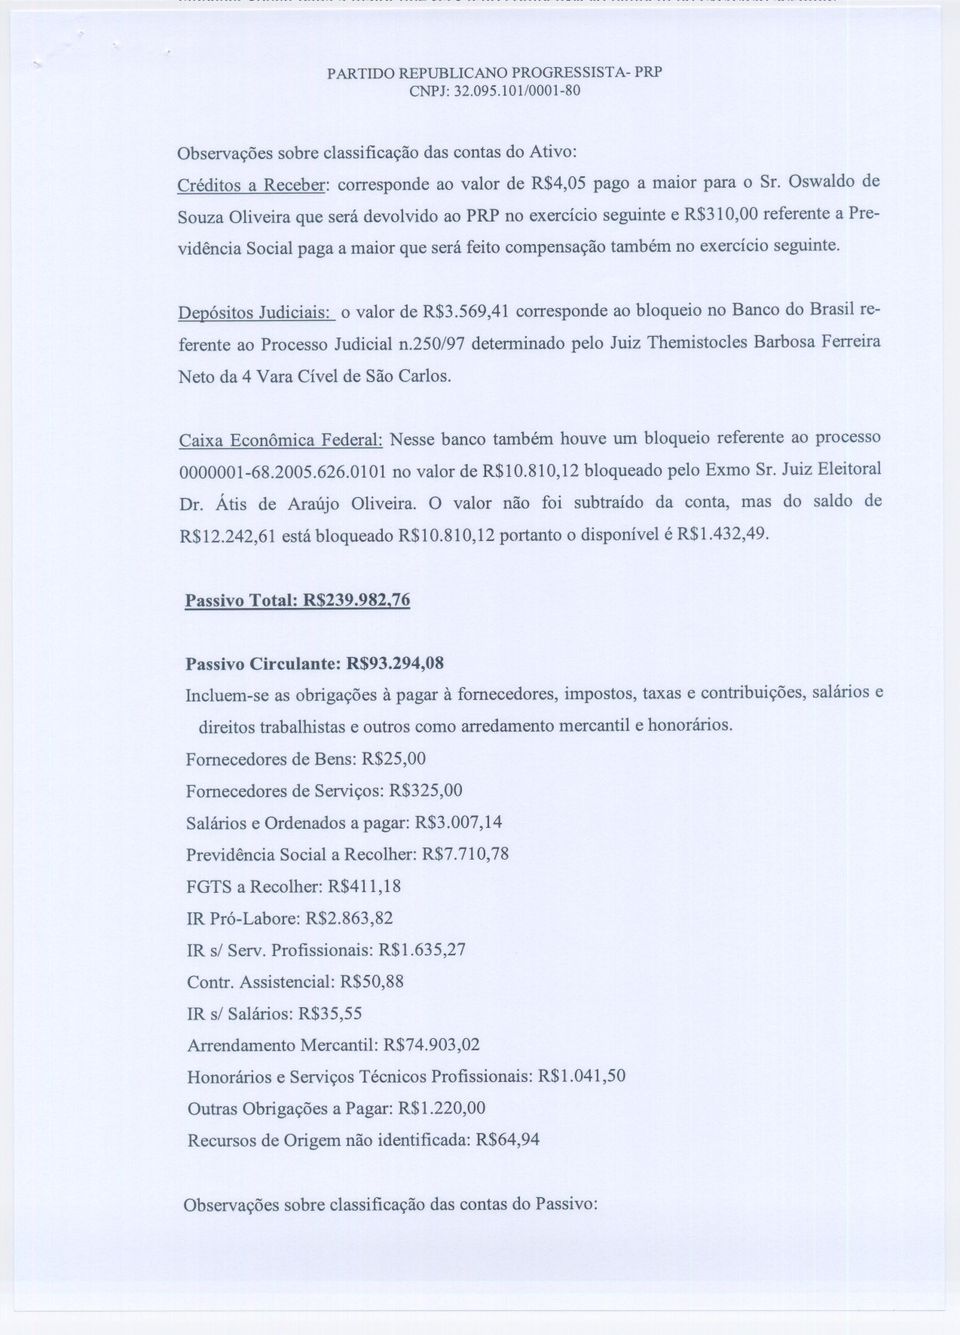 Depósitos Judiciais: o valor de R$3.569,41 corresponde ao bloqueio no Banco do Brasil referente ao Processo Judicial n.